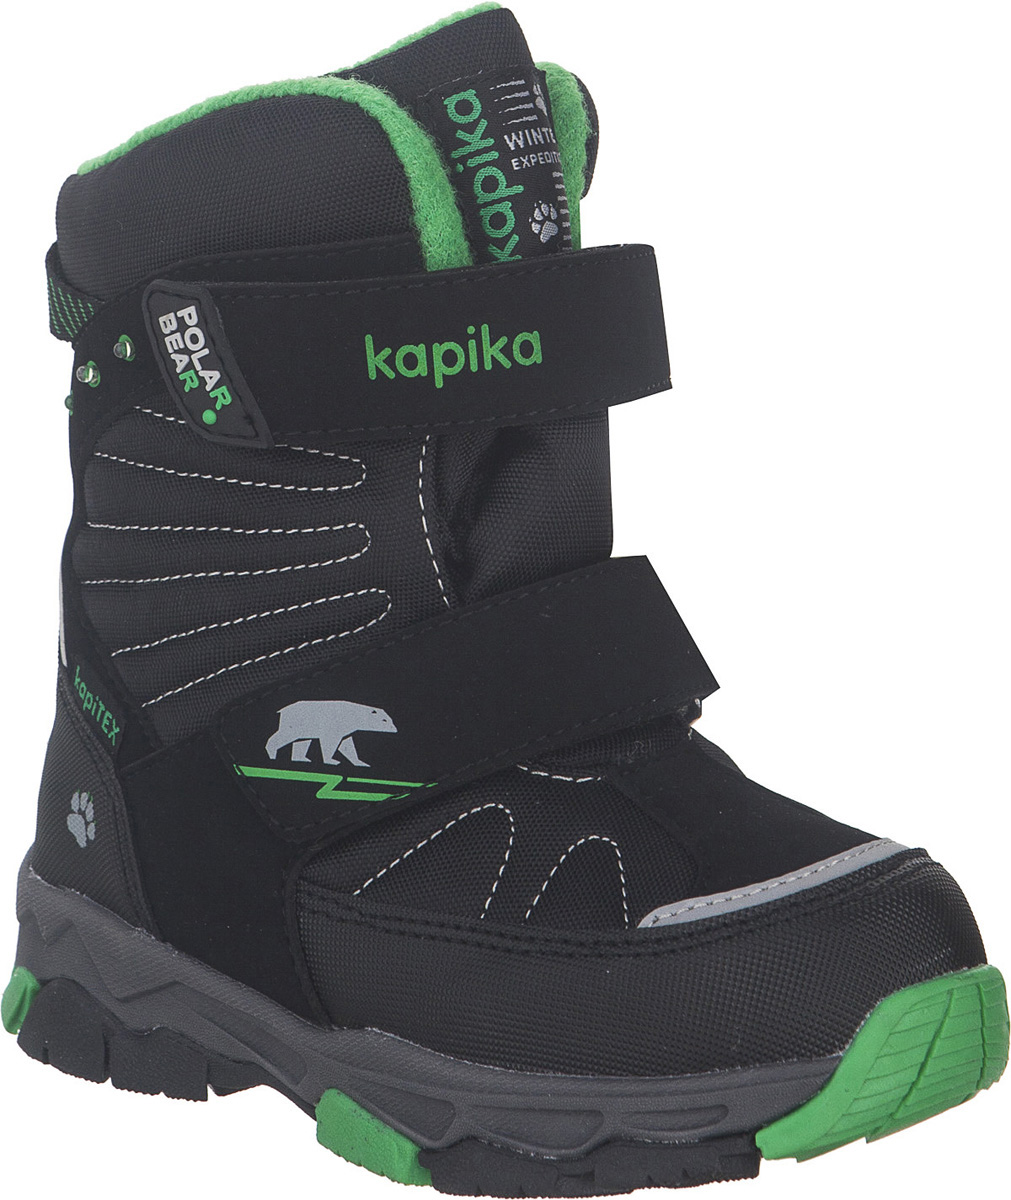 Ботинки для мальчика Kapika KapiTEX, цвет: черный, зеленый. 42235-1. Размер 31